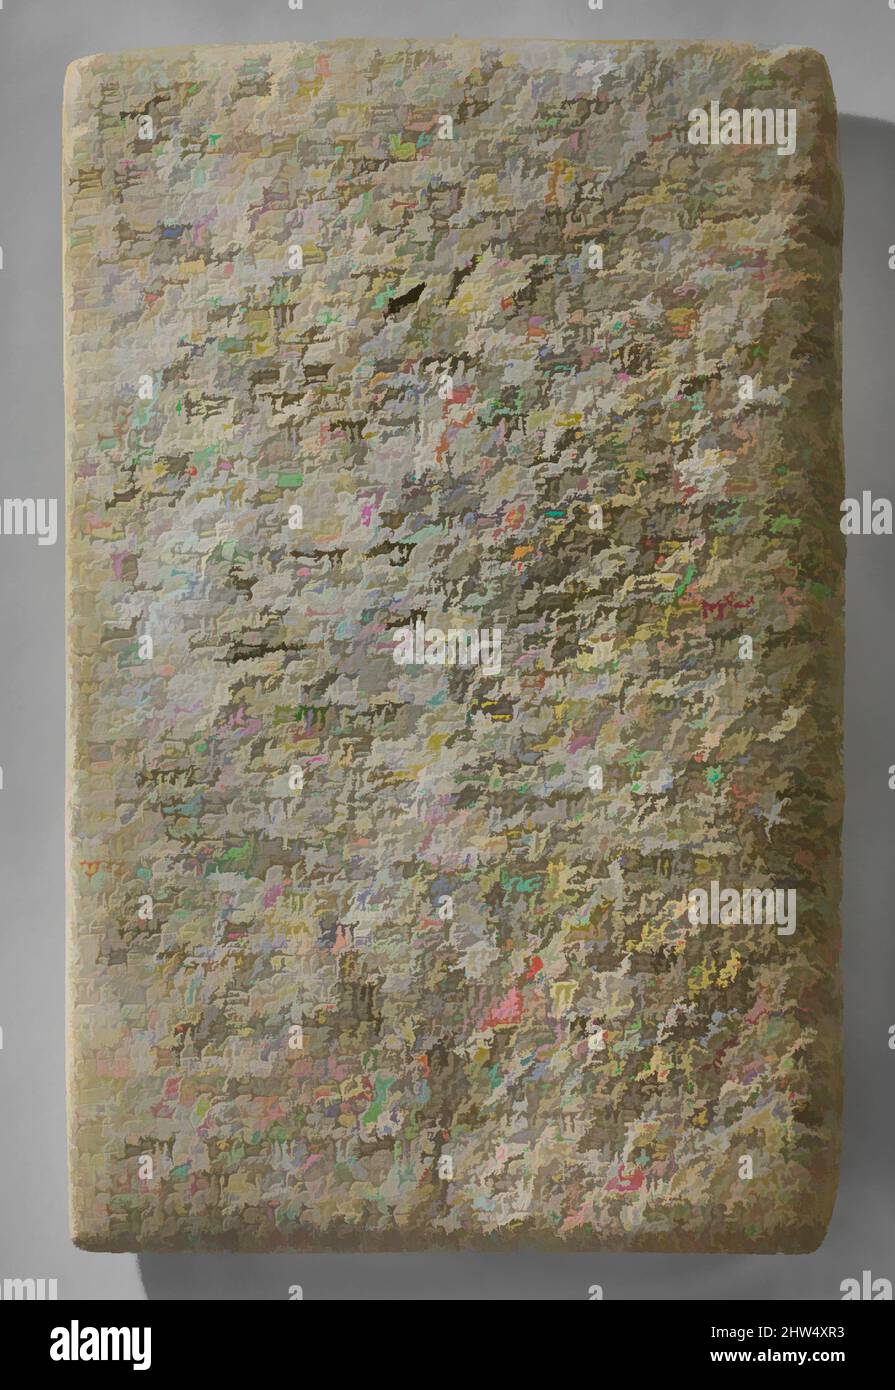 Arte ispirata a tavoletta cuneiforme di pietra con iscrizione di Ashurnasirpal II, Neo-Assiro, ca. 883–859 a.C., Mesopotamia, Nimrud (antico Kalhu), Assiro, alabastro gesso, 26 1/2 x 17 x 1 1/4 pollici, 82 libbre (67,3 x 43,2 x 3,2 cm), pietra-Tablets-inscritto, opere classiche modernizzate da Artotop con un tuffo di modernità. Forme, colore e valore, impatto visivo accattivante sulle emozioni artistiche attraverso la libertà delle opere d'arte in modo contemporaneo. Un messaggio senza tempo che persegue una nuova direzione selvaggiamente creativa. Artisti che si rivolgono al supporto digitale e creano l'NFT Artotop Foto Stock